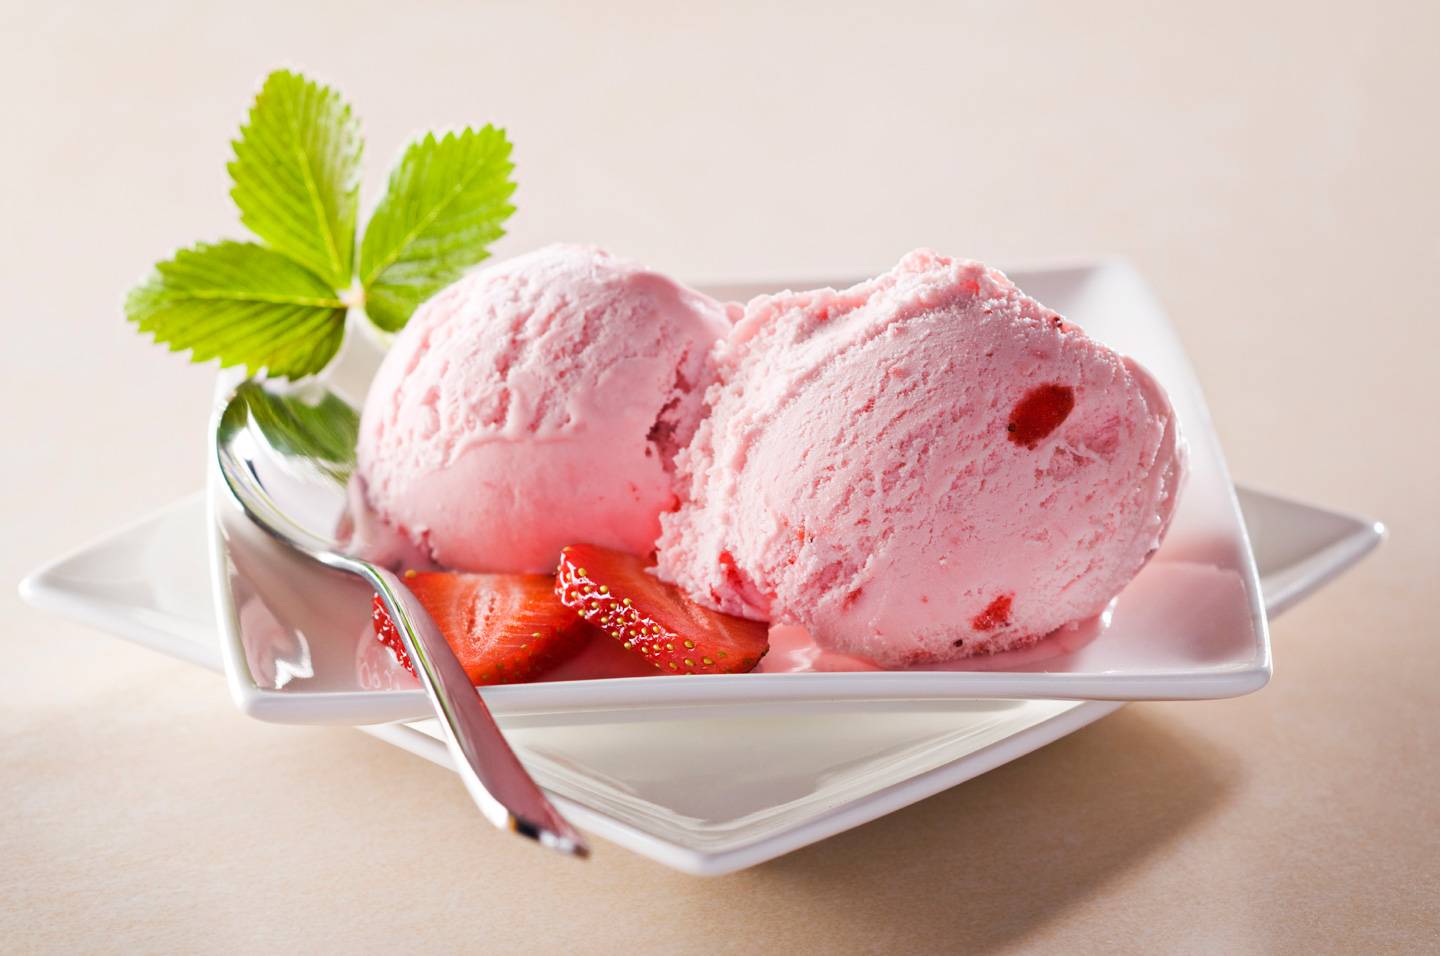 Strawberry cream Wallpaper